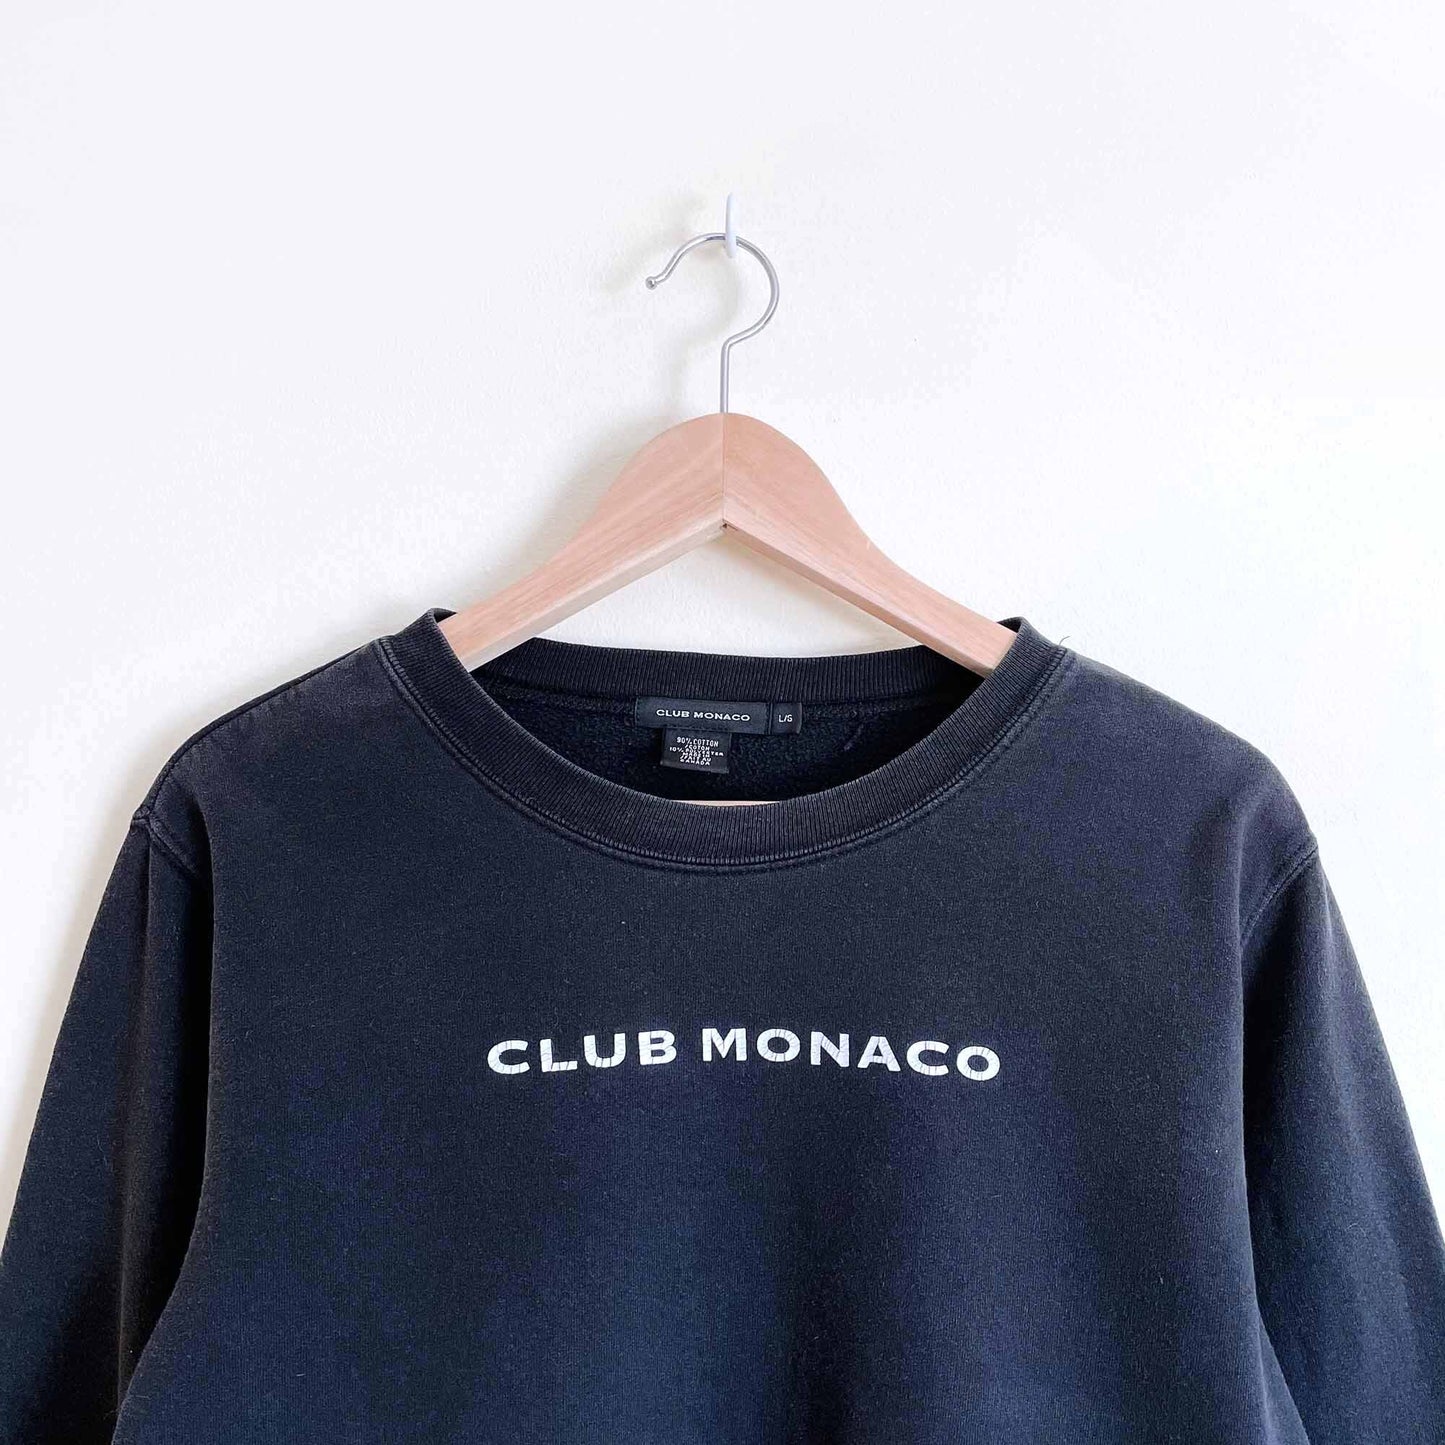 Vintage Club Monaco cropped logo sweatshirt - size Large